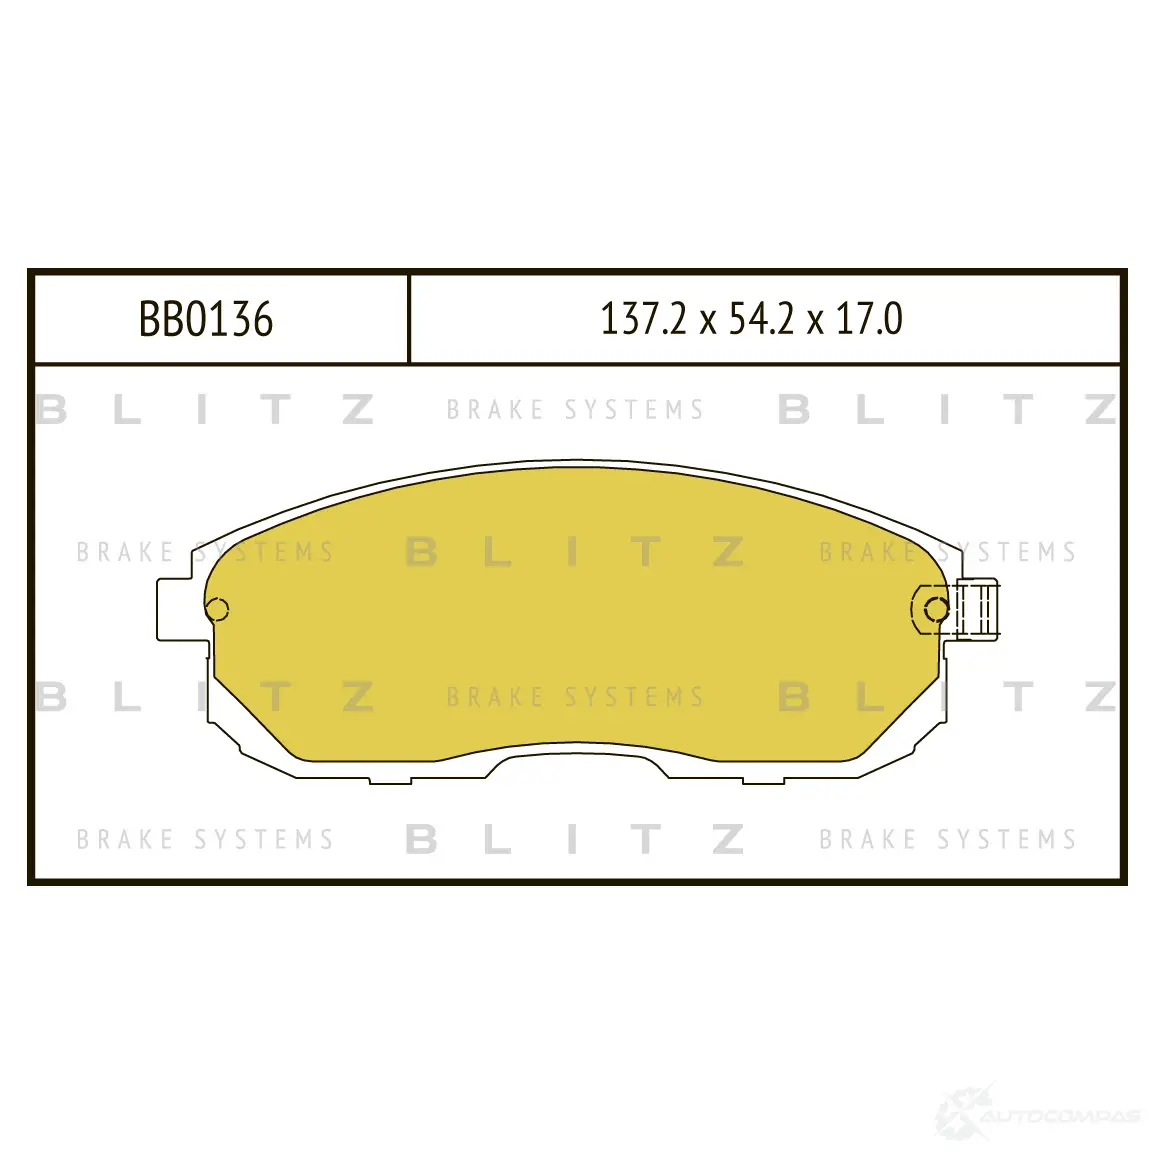 Тормозные колодки передние BLITZ Q3G 97 1422986369 bb0136 изображение 0